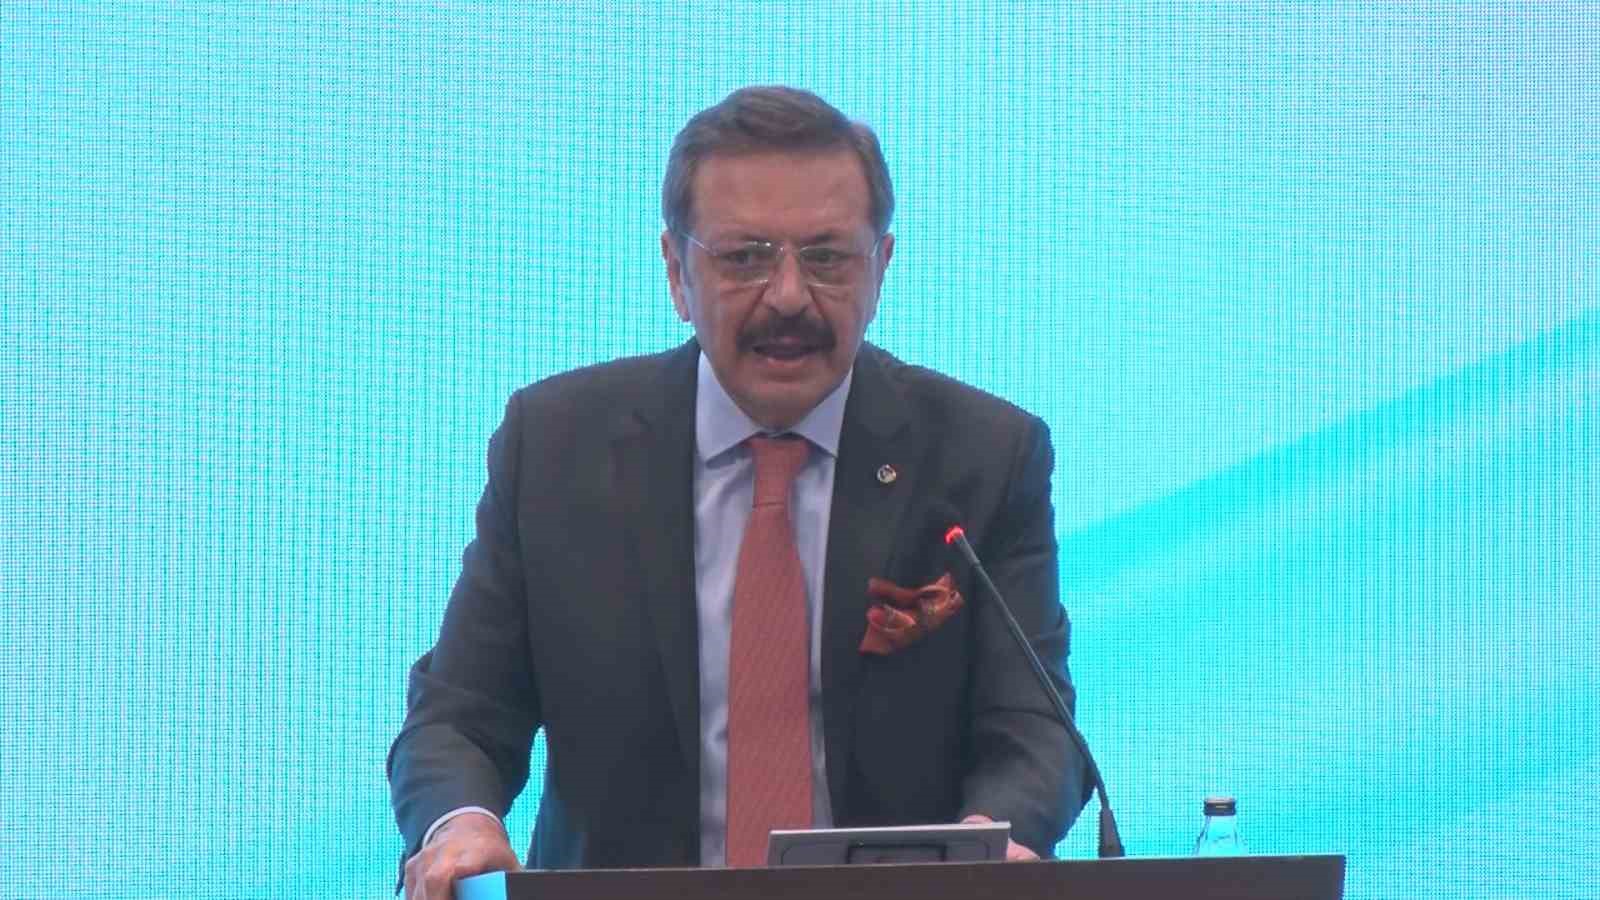 Cumhurbaşkanı Yardımcısı Yılmaz: “Türkiye ekonomisi küresel ve bölgesel zorluklara rağmen olumsuzlukların üstesinden gelmiş ve gelmeye devam etmektedir”
